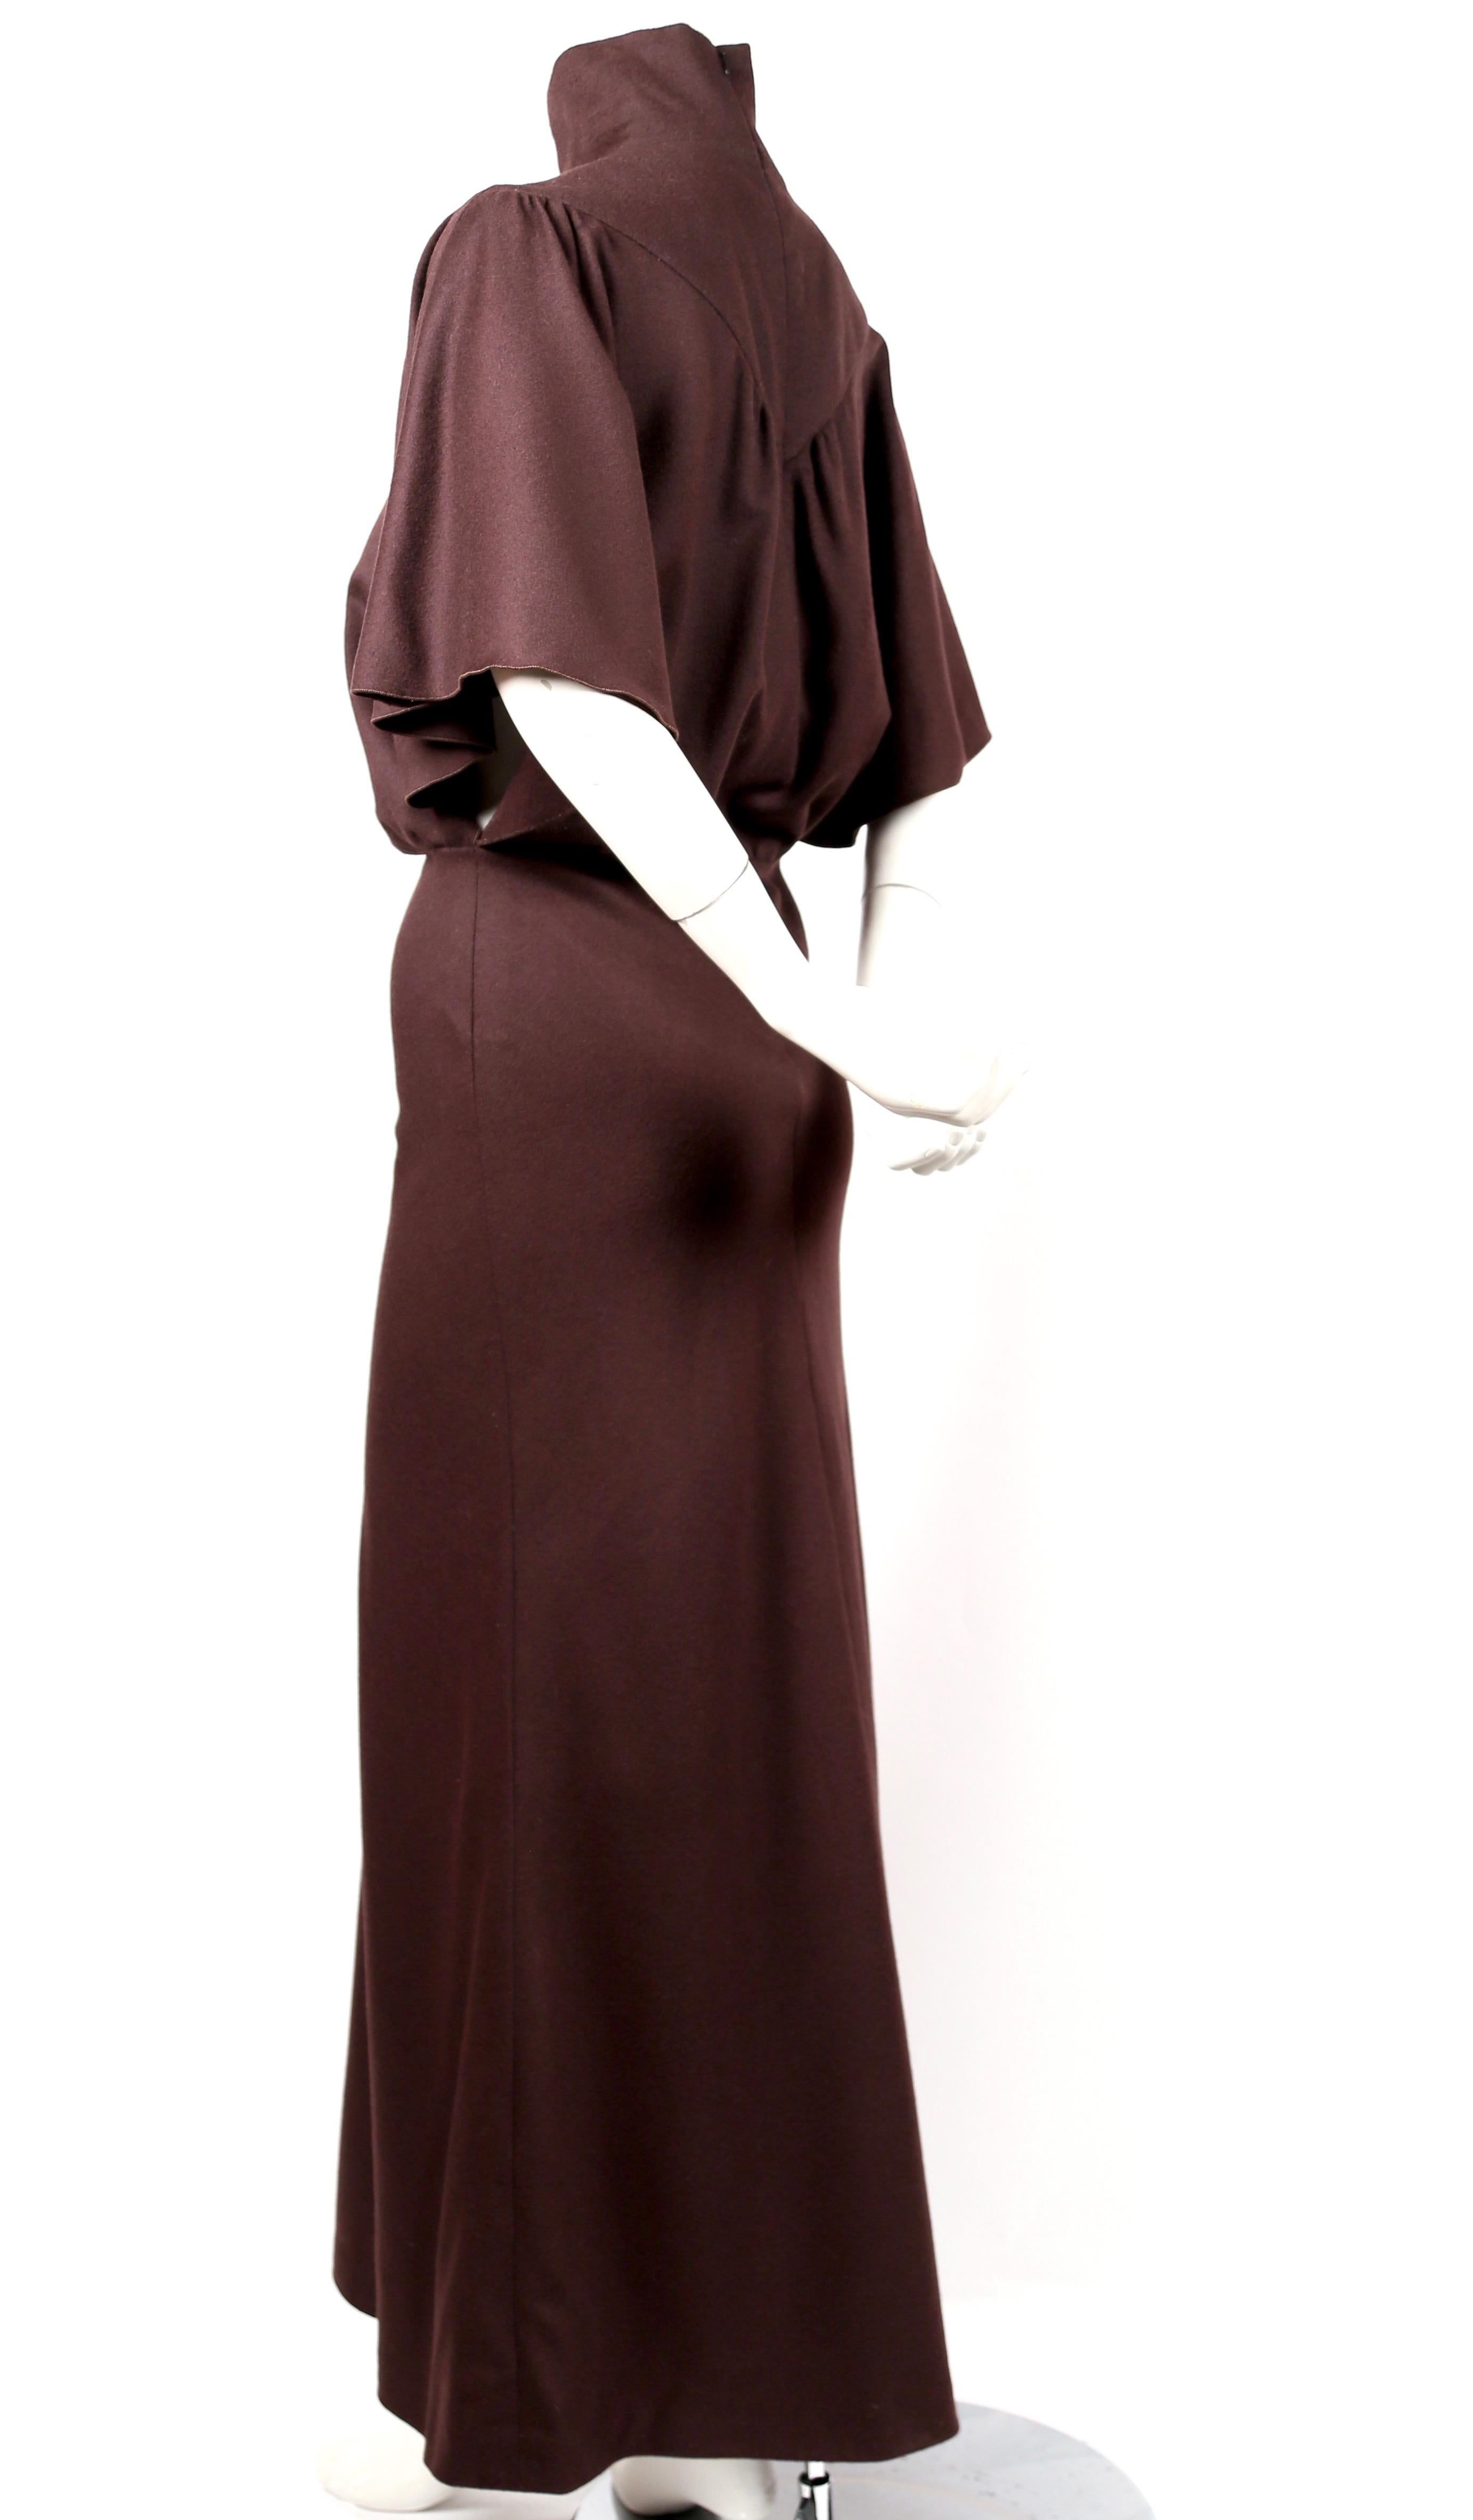 Schräg geschnittenes, braunes Wollkleid mit Flatterärmeln, entworfen von Nicolas Ghesquiere für Balenciaga Herbst 1998. Dies ist das Kleid, das auf dem Laufsteg getragen wurde. Sie wurde dem Laufstegmodel von Nicolas Ghesquiere geschenkt. Kein Label